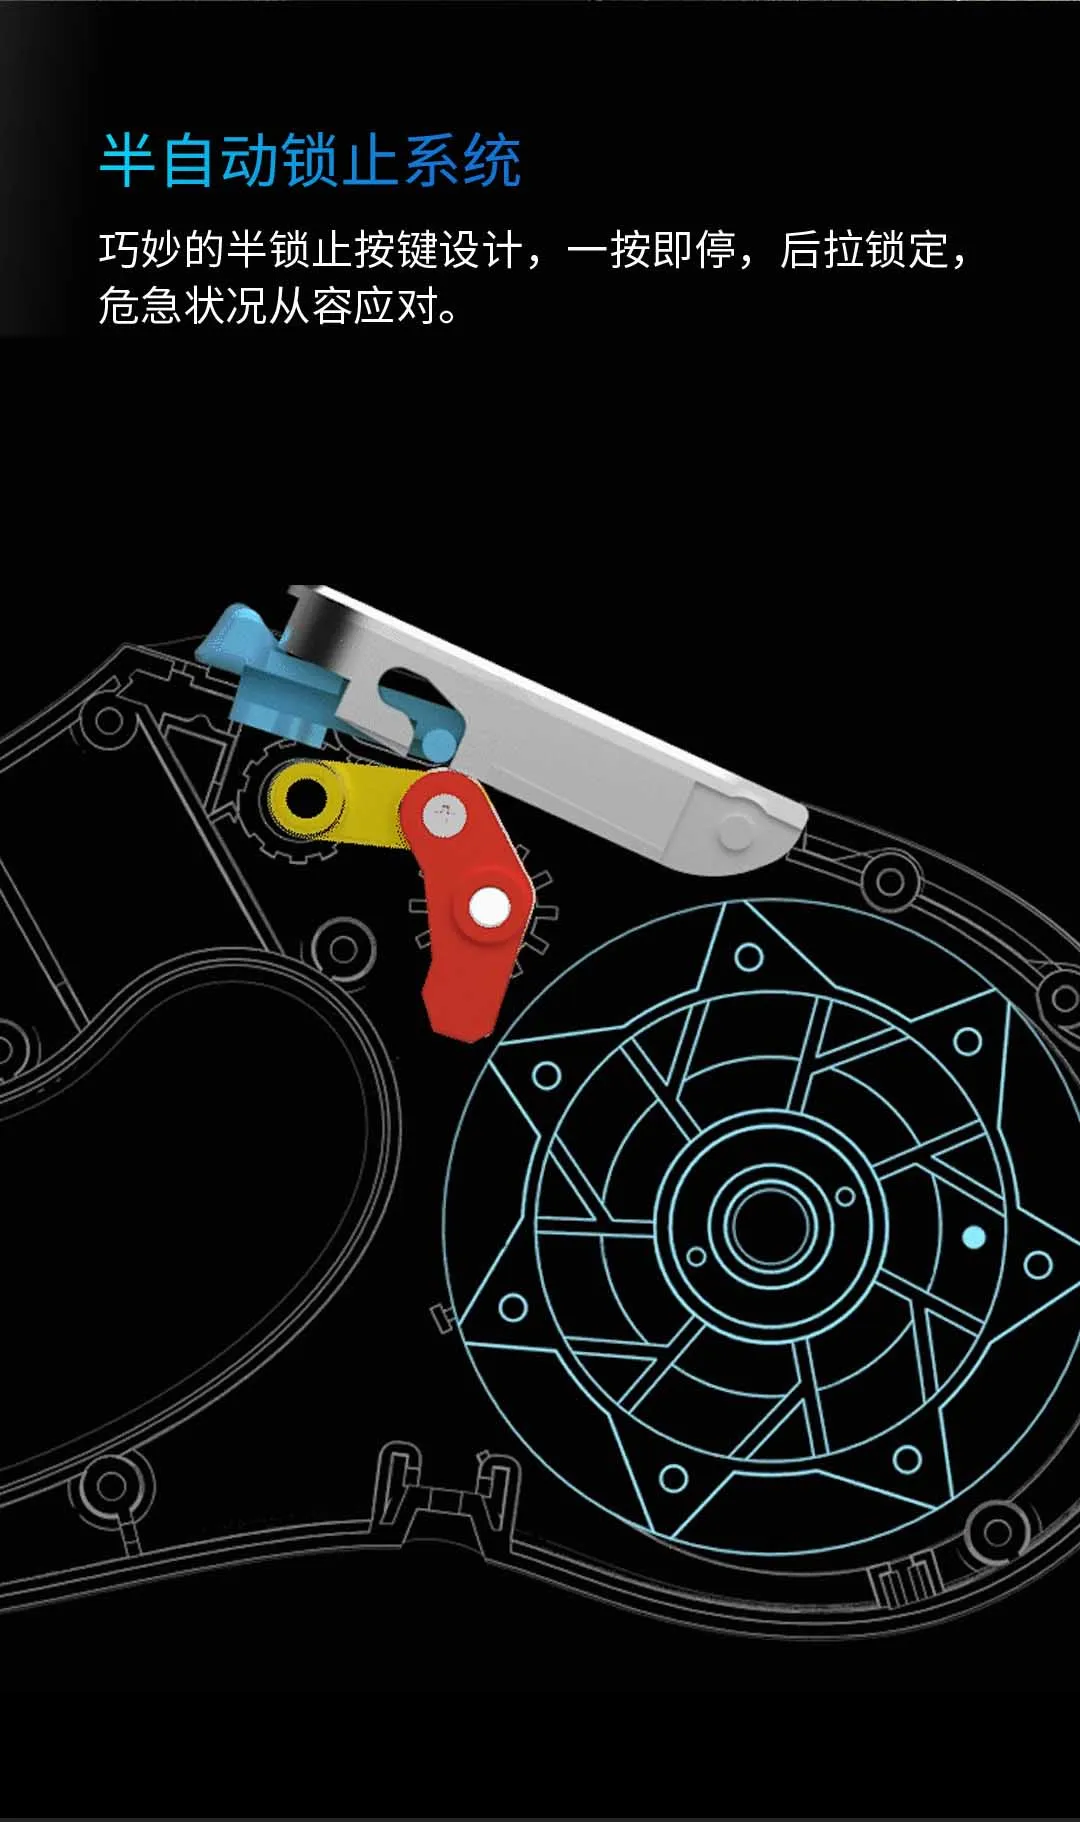 Xiaomi Mijia Youpin Petkit стример Выдвижная Тяговая веревка белая сенсорная работа красочный стример с одной кнопкой блокировки зарядки